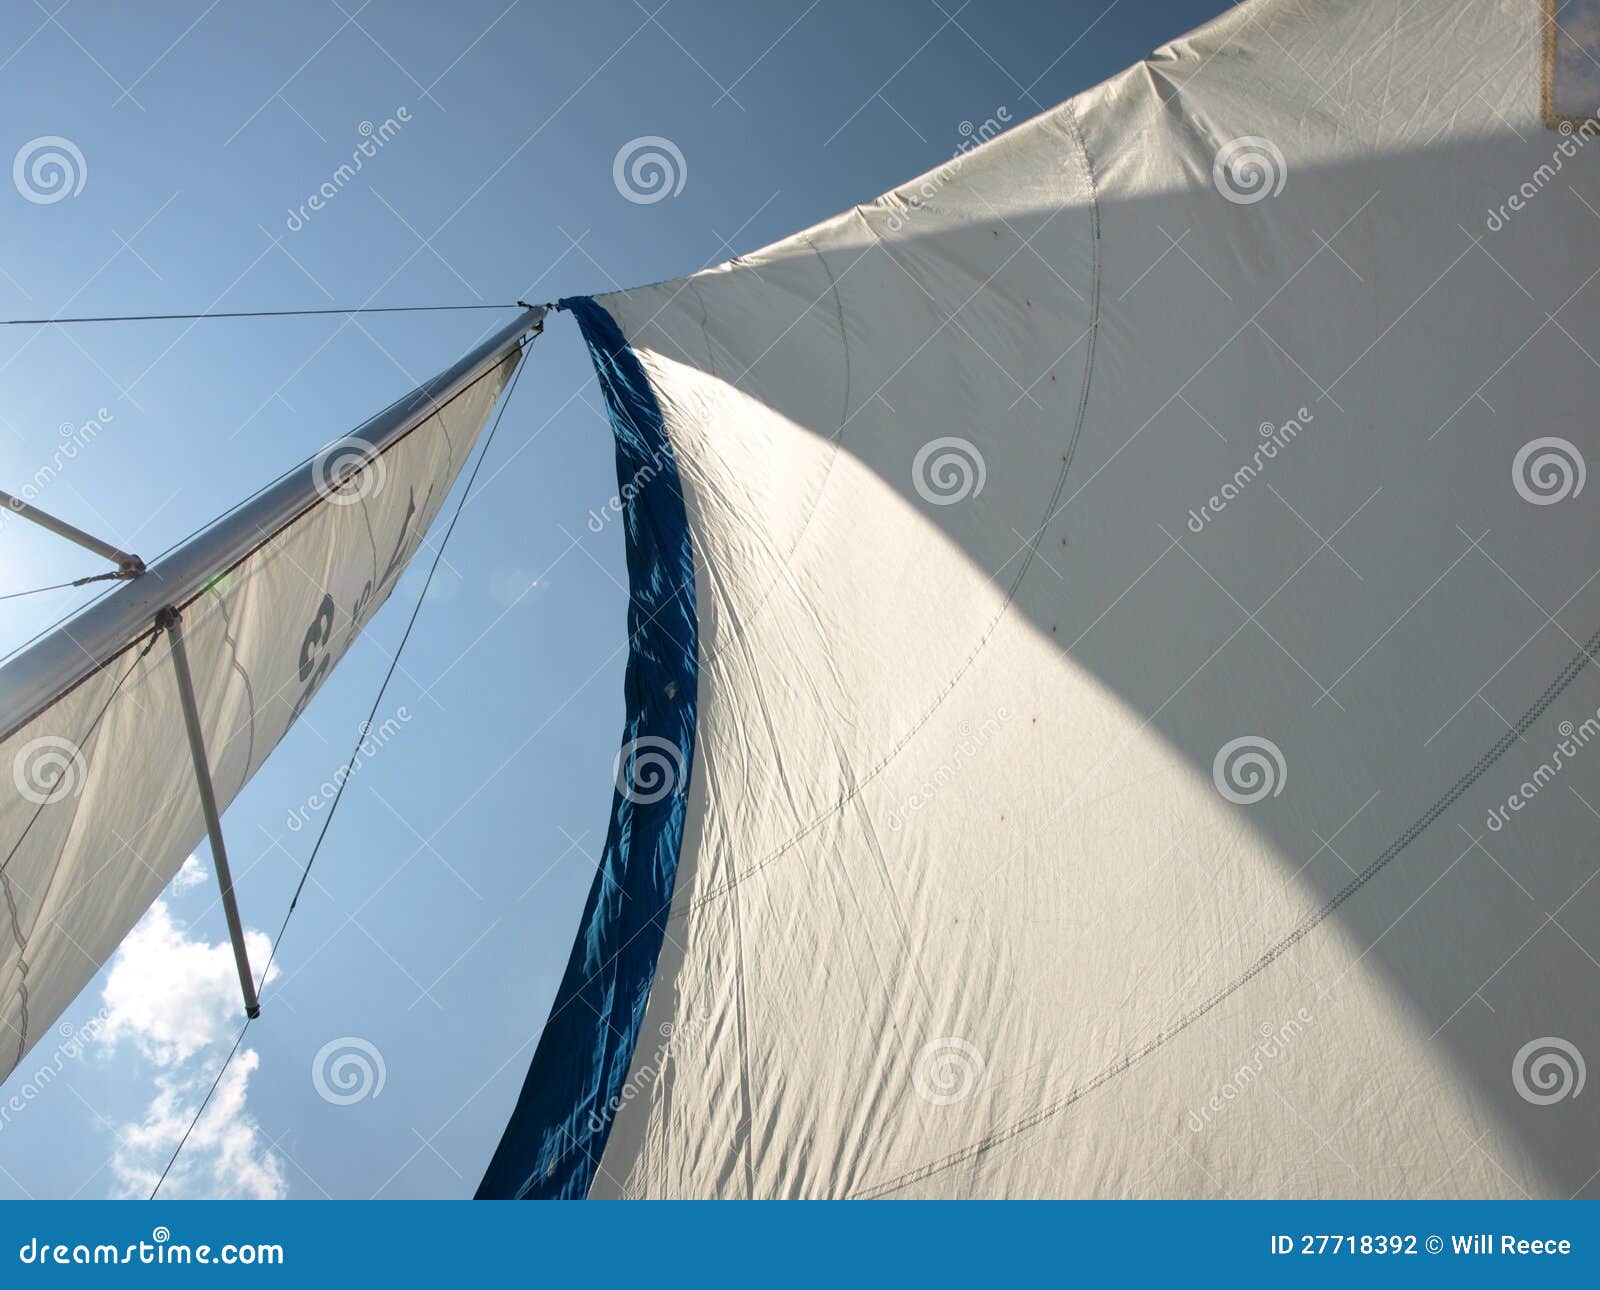 wind in sails in sailboat